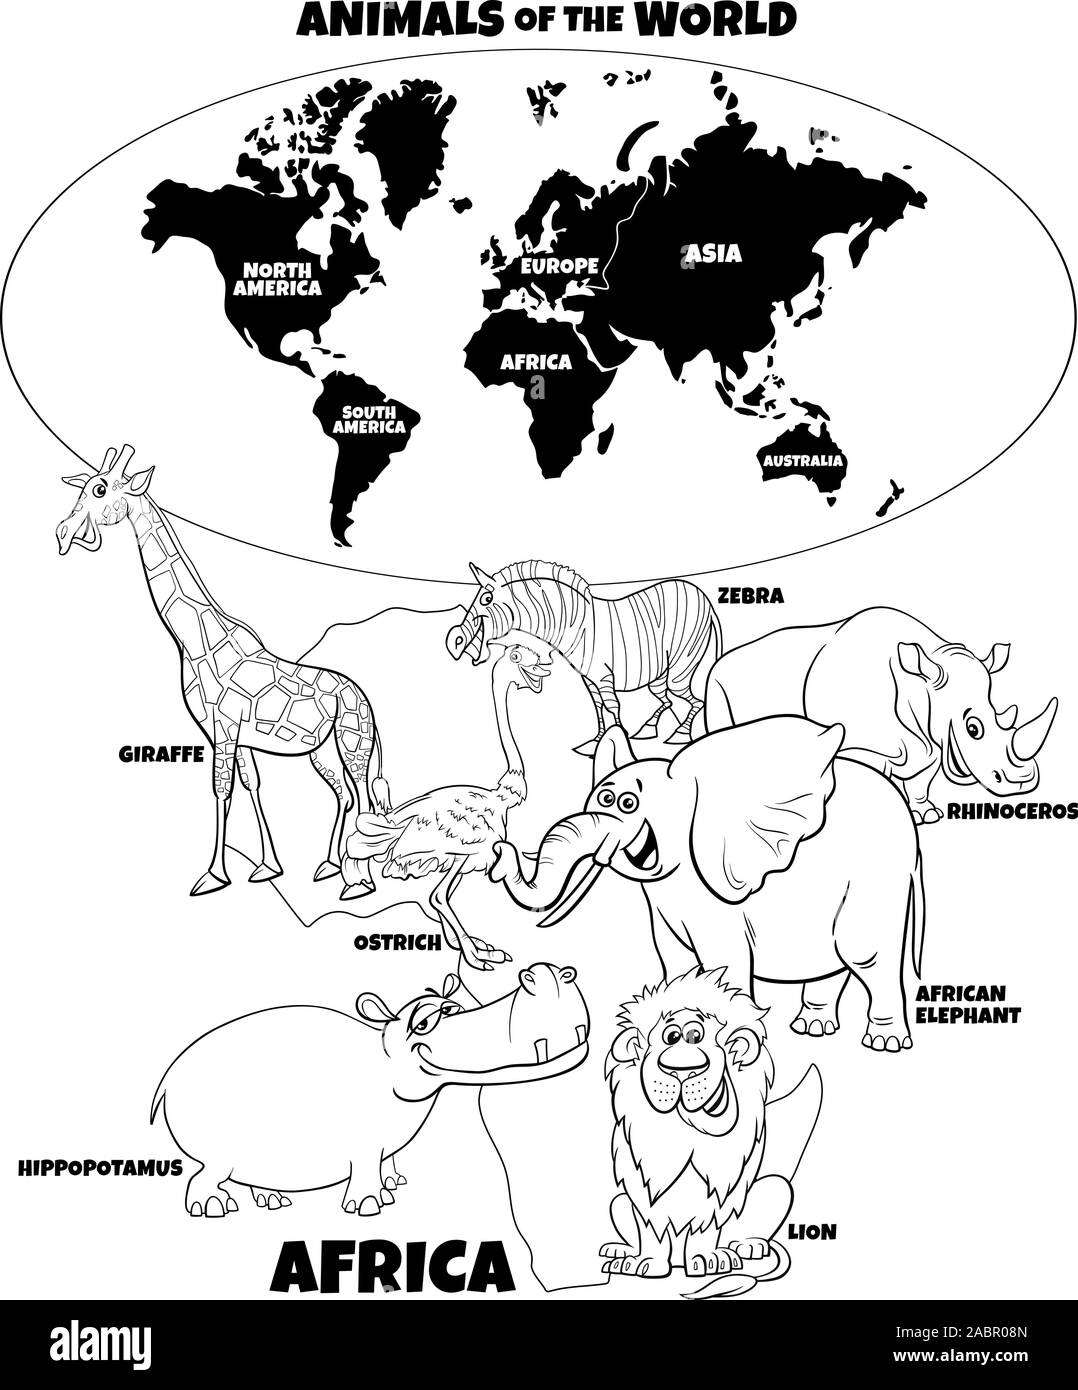 Noir et Blanc Dessin Animé éducatif Illustration d'animaux d'Afrique et carte du monde avec Continents Page à colorier Illustration de Vecteur